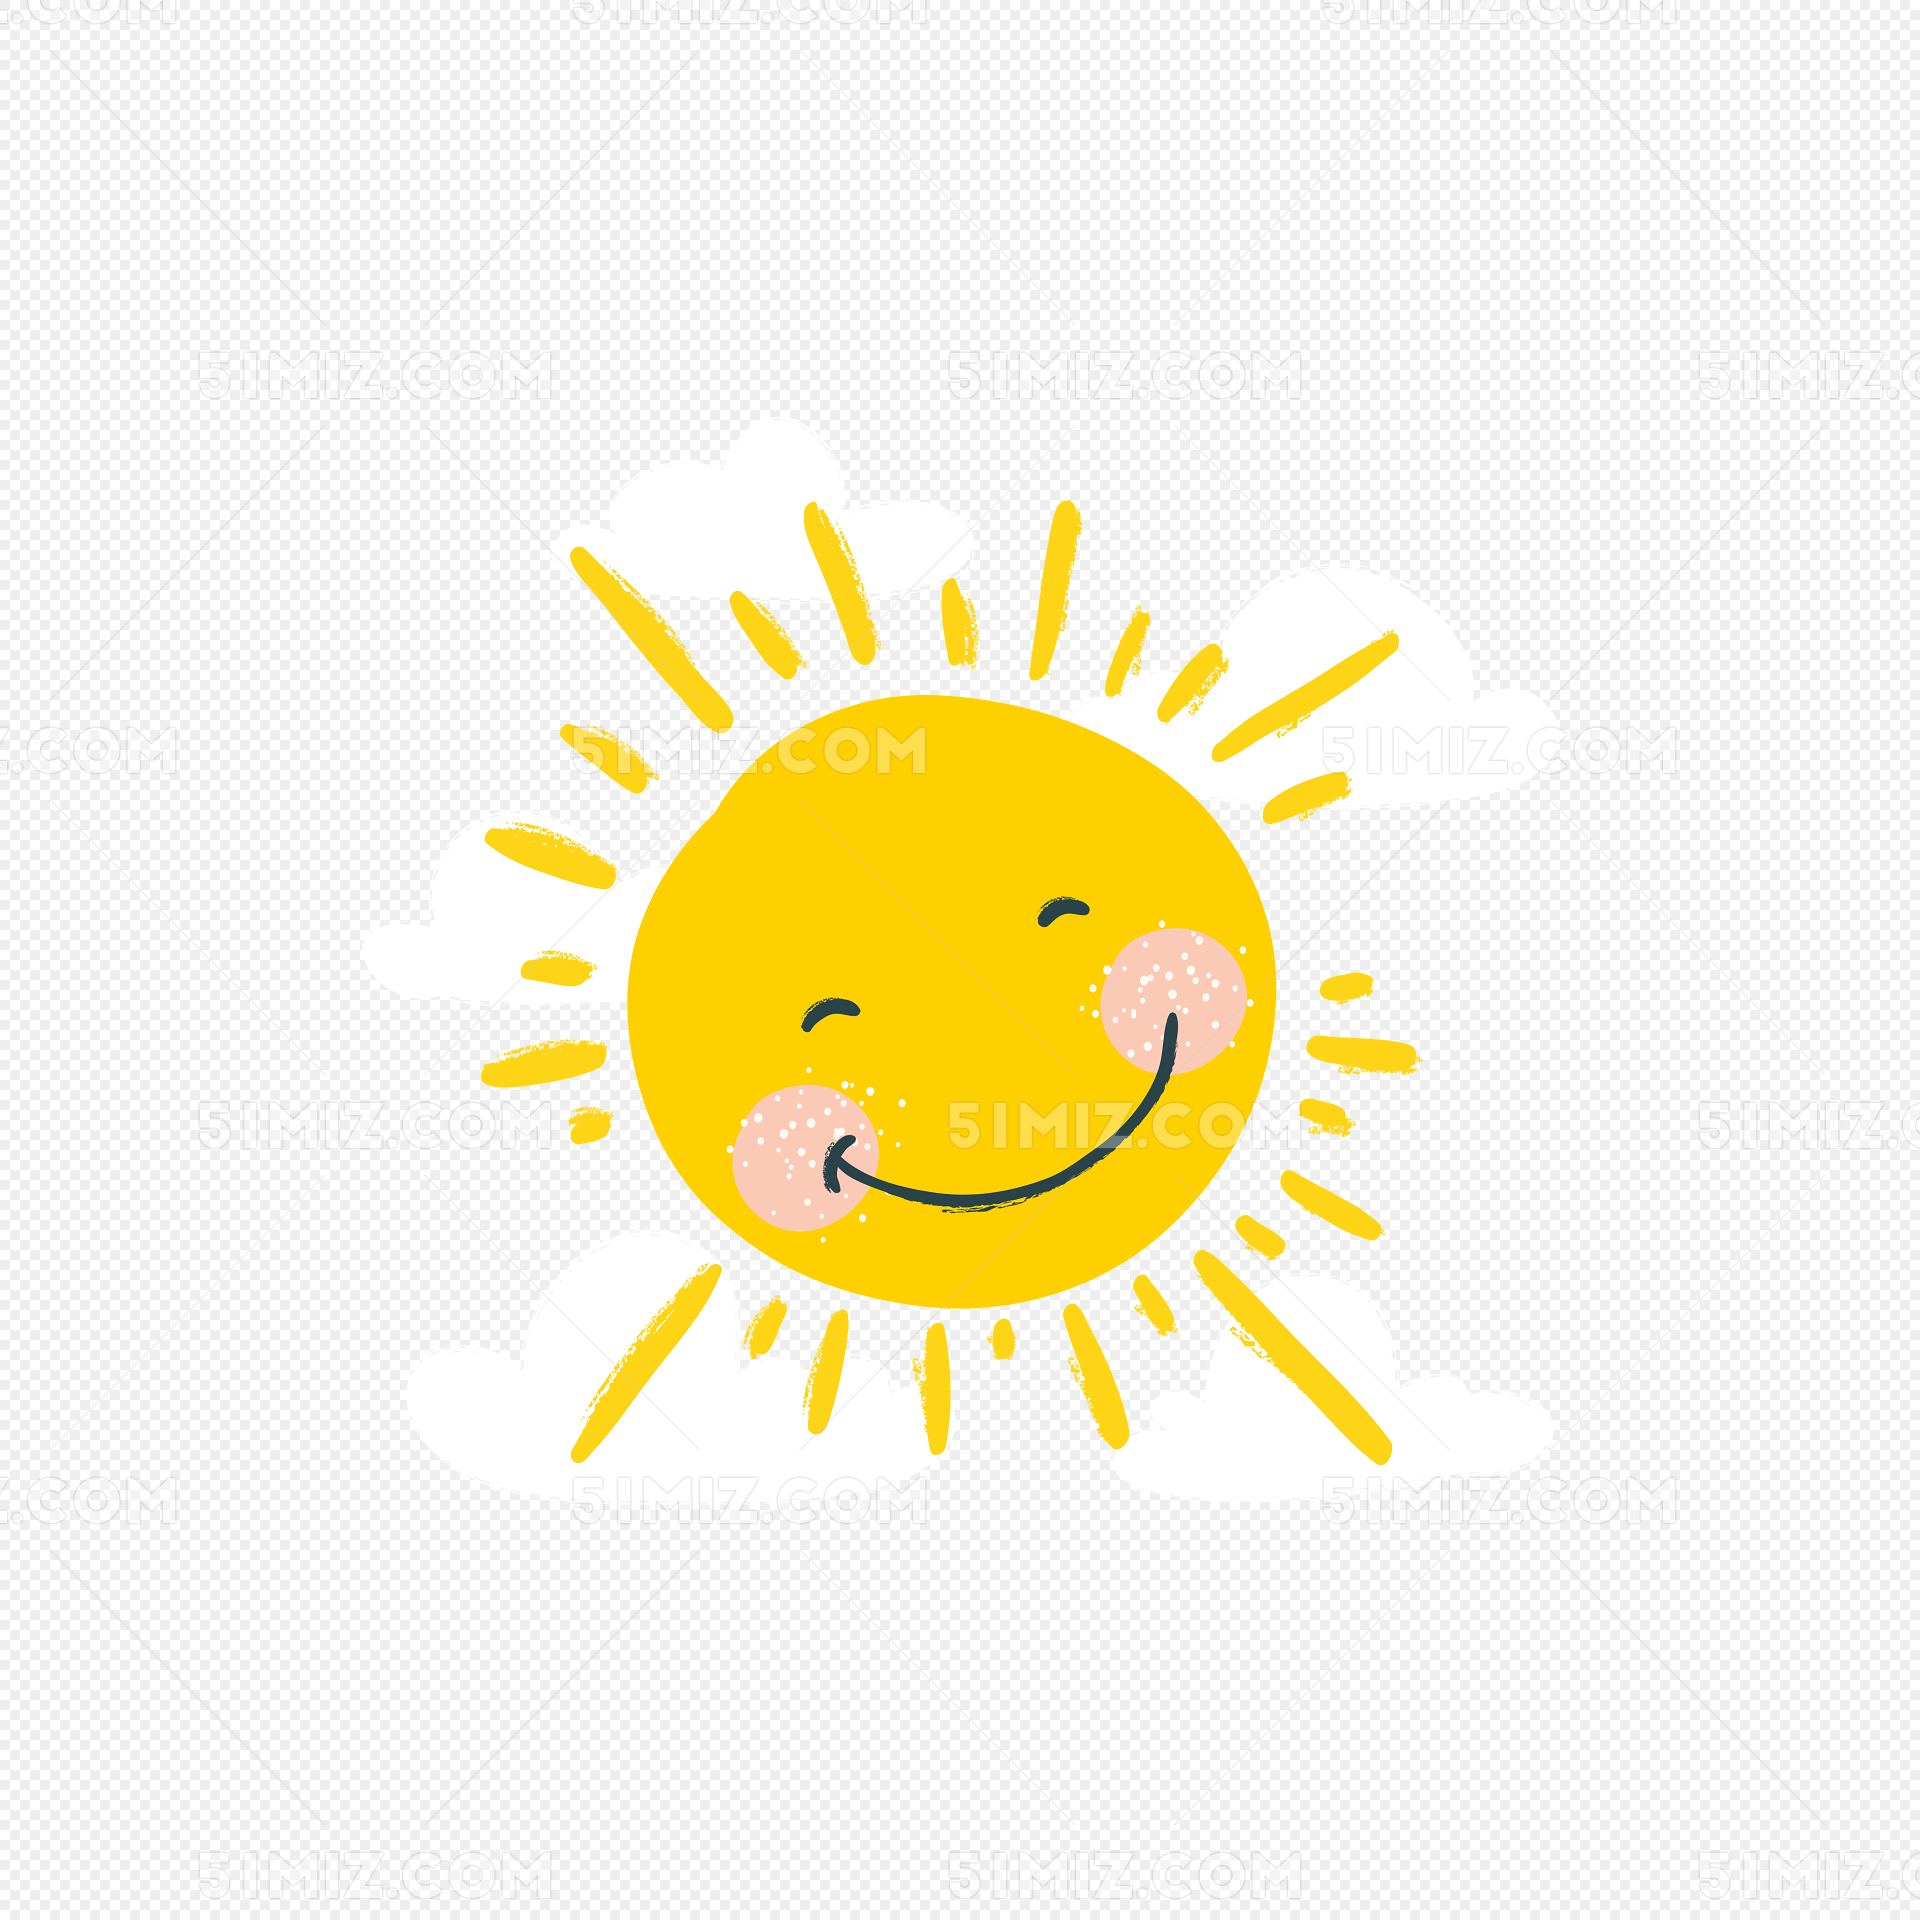 嘟嘴微笑表情卡通可愛太陽, 可愛, 笑臉太陽, 可愛風格向量圖案素材免費下載，PNG，EPS和AI素材下載 - Pngtree